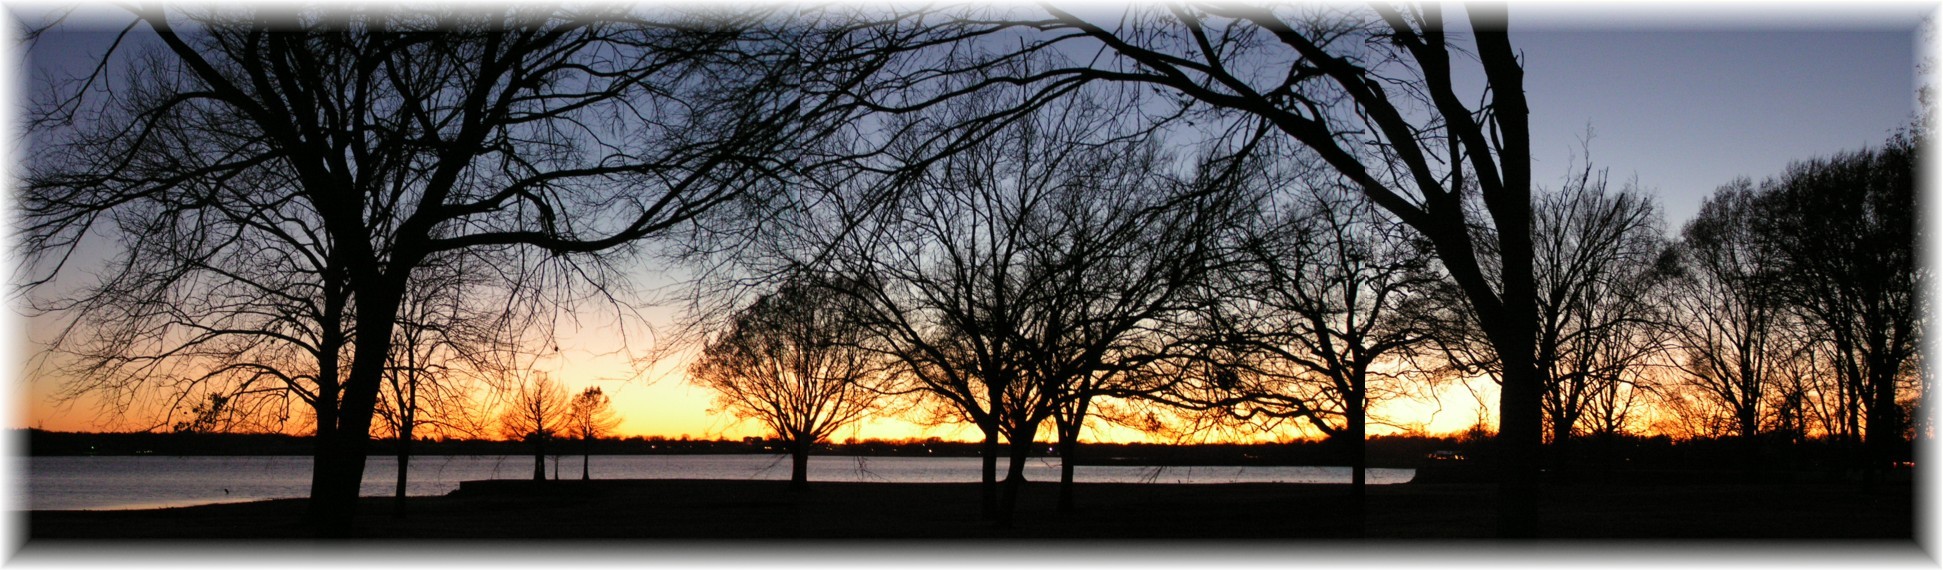 lake bonham sunset